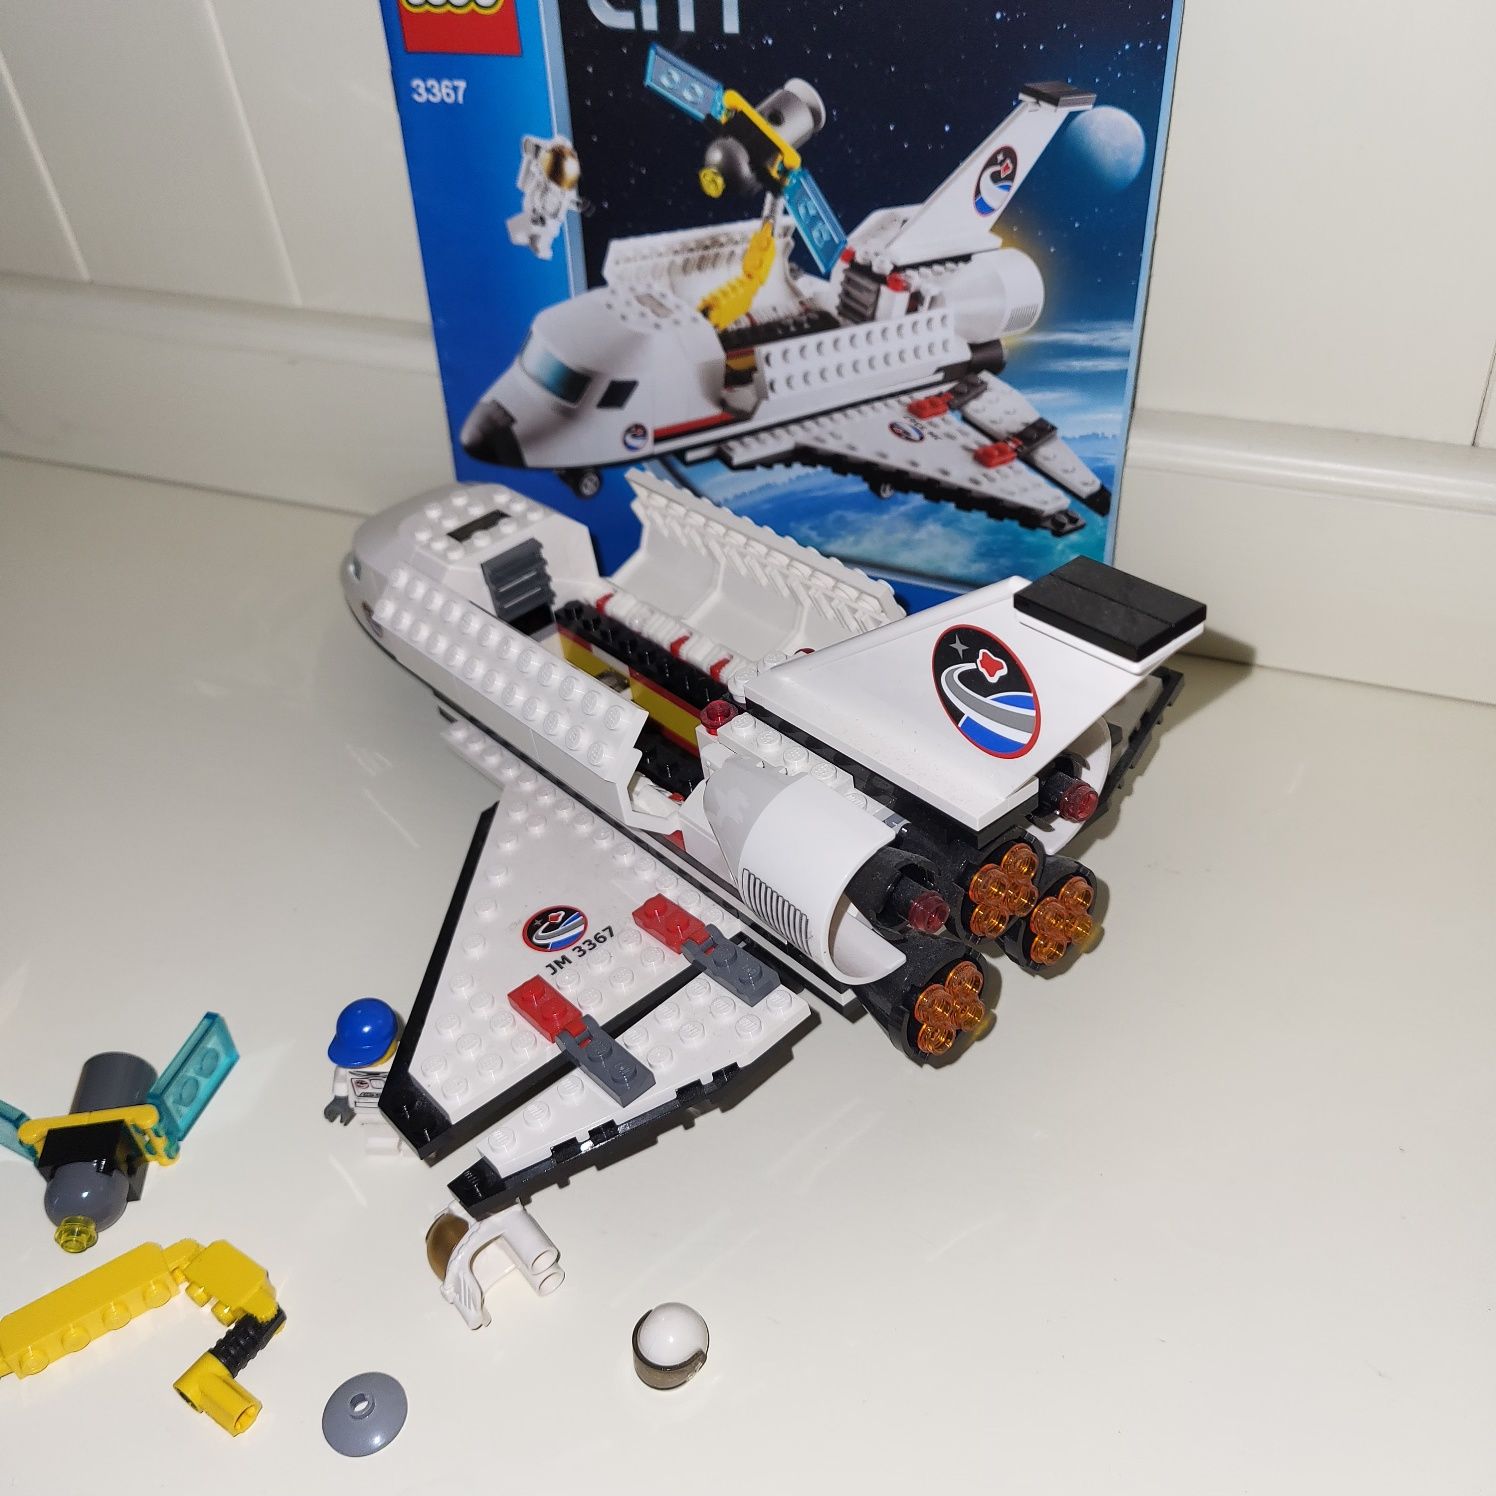 Літак Лего Lego city 3367